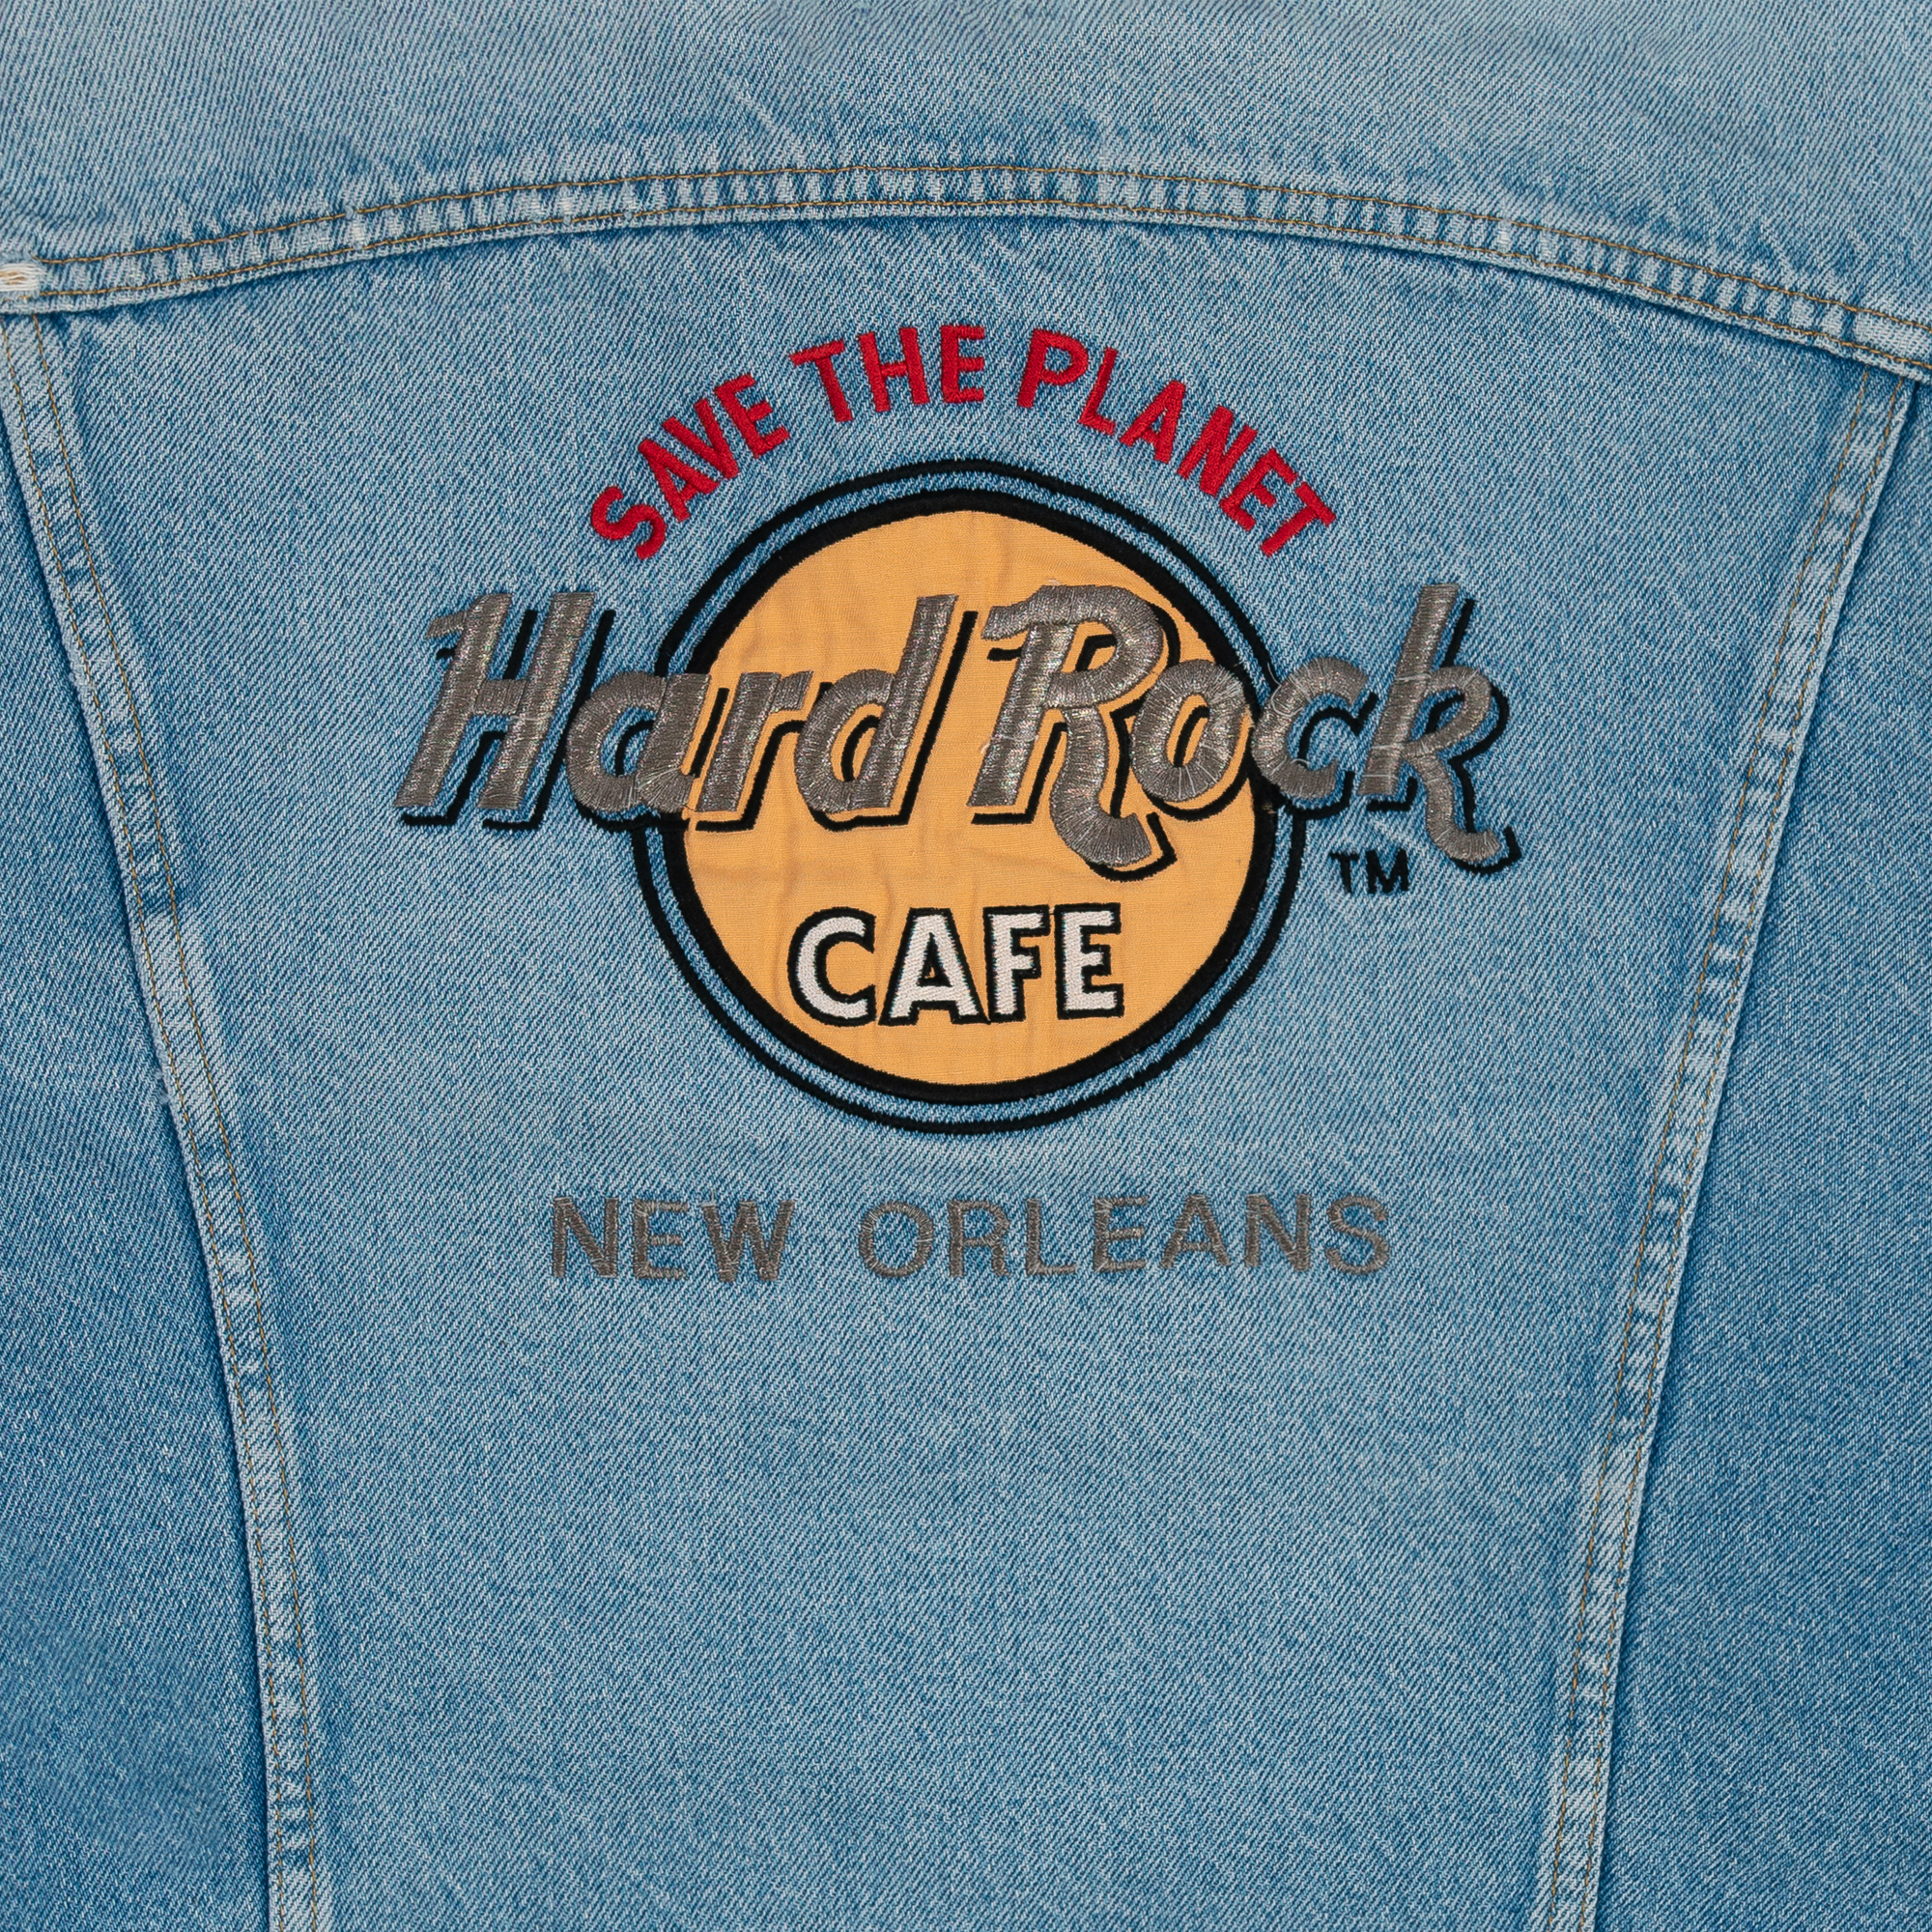 Hard Rock Cafe New Orleans Denim Jacket Blue-PLUS